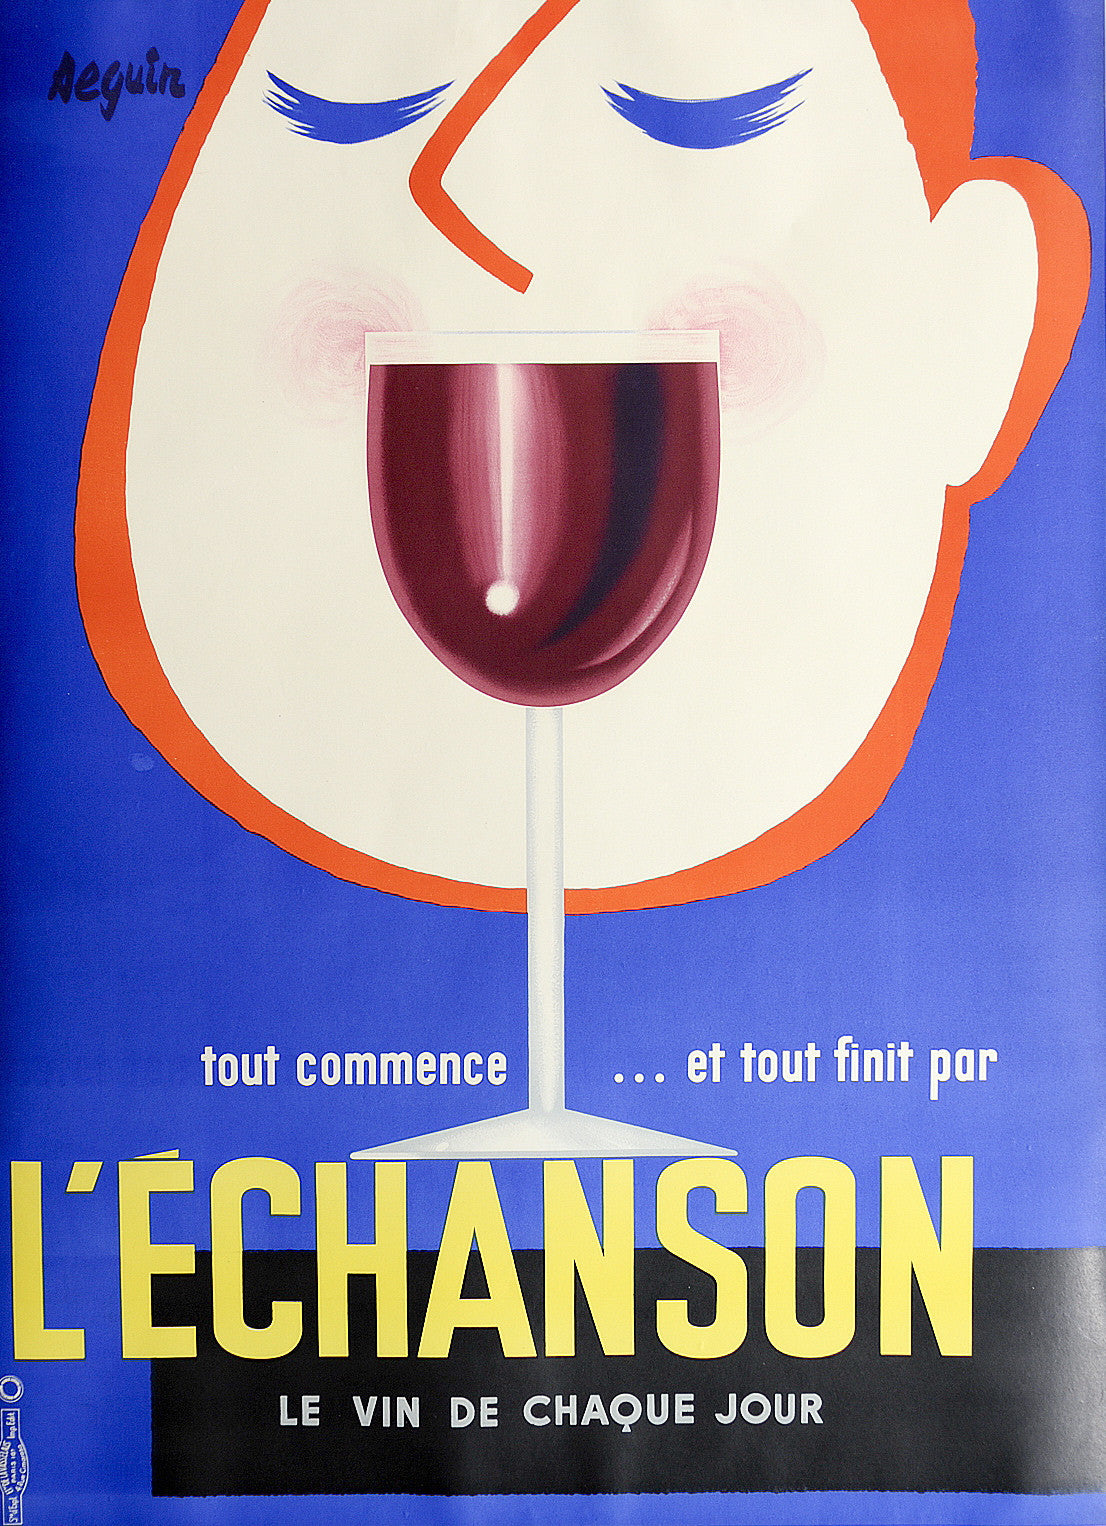 L'echanson by Seguin